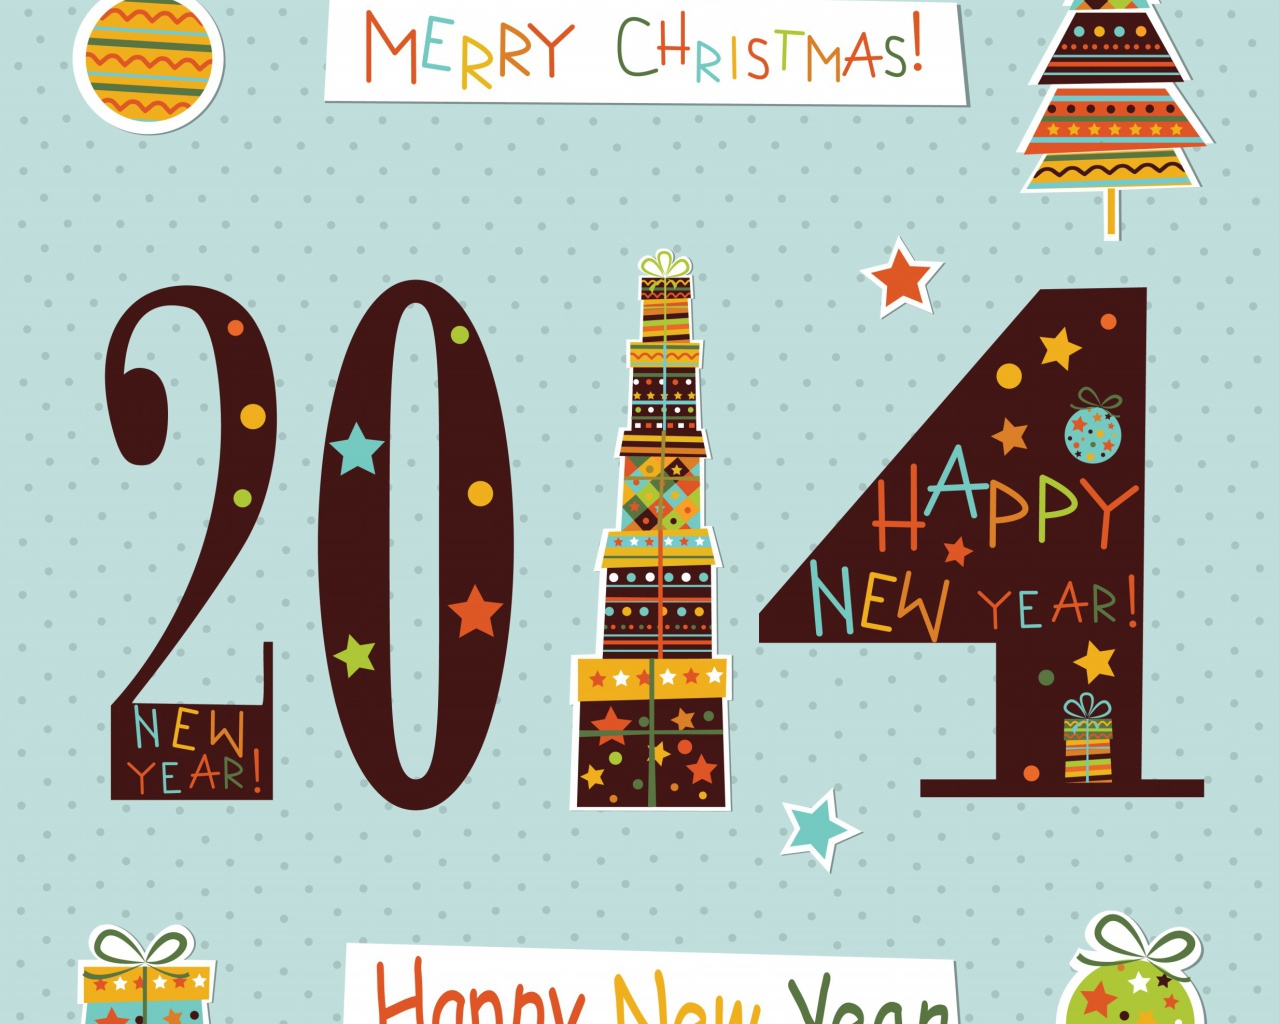 Пусть будет щедрым Новый год 2014